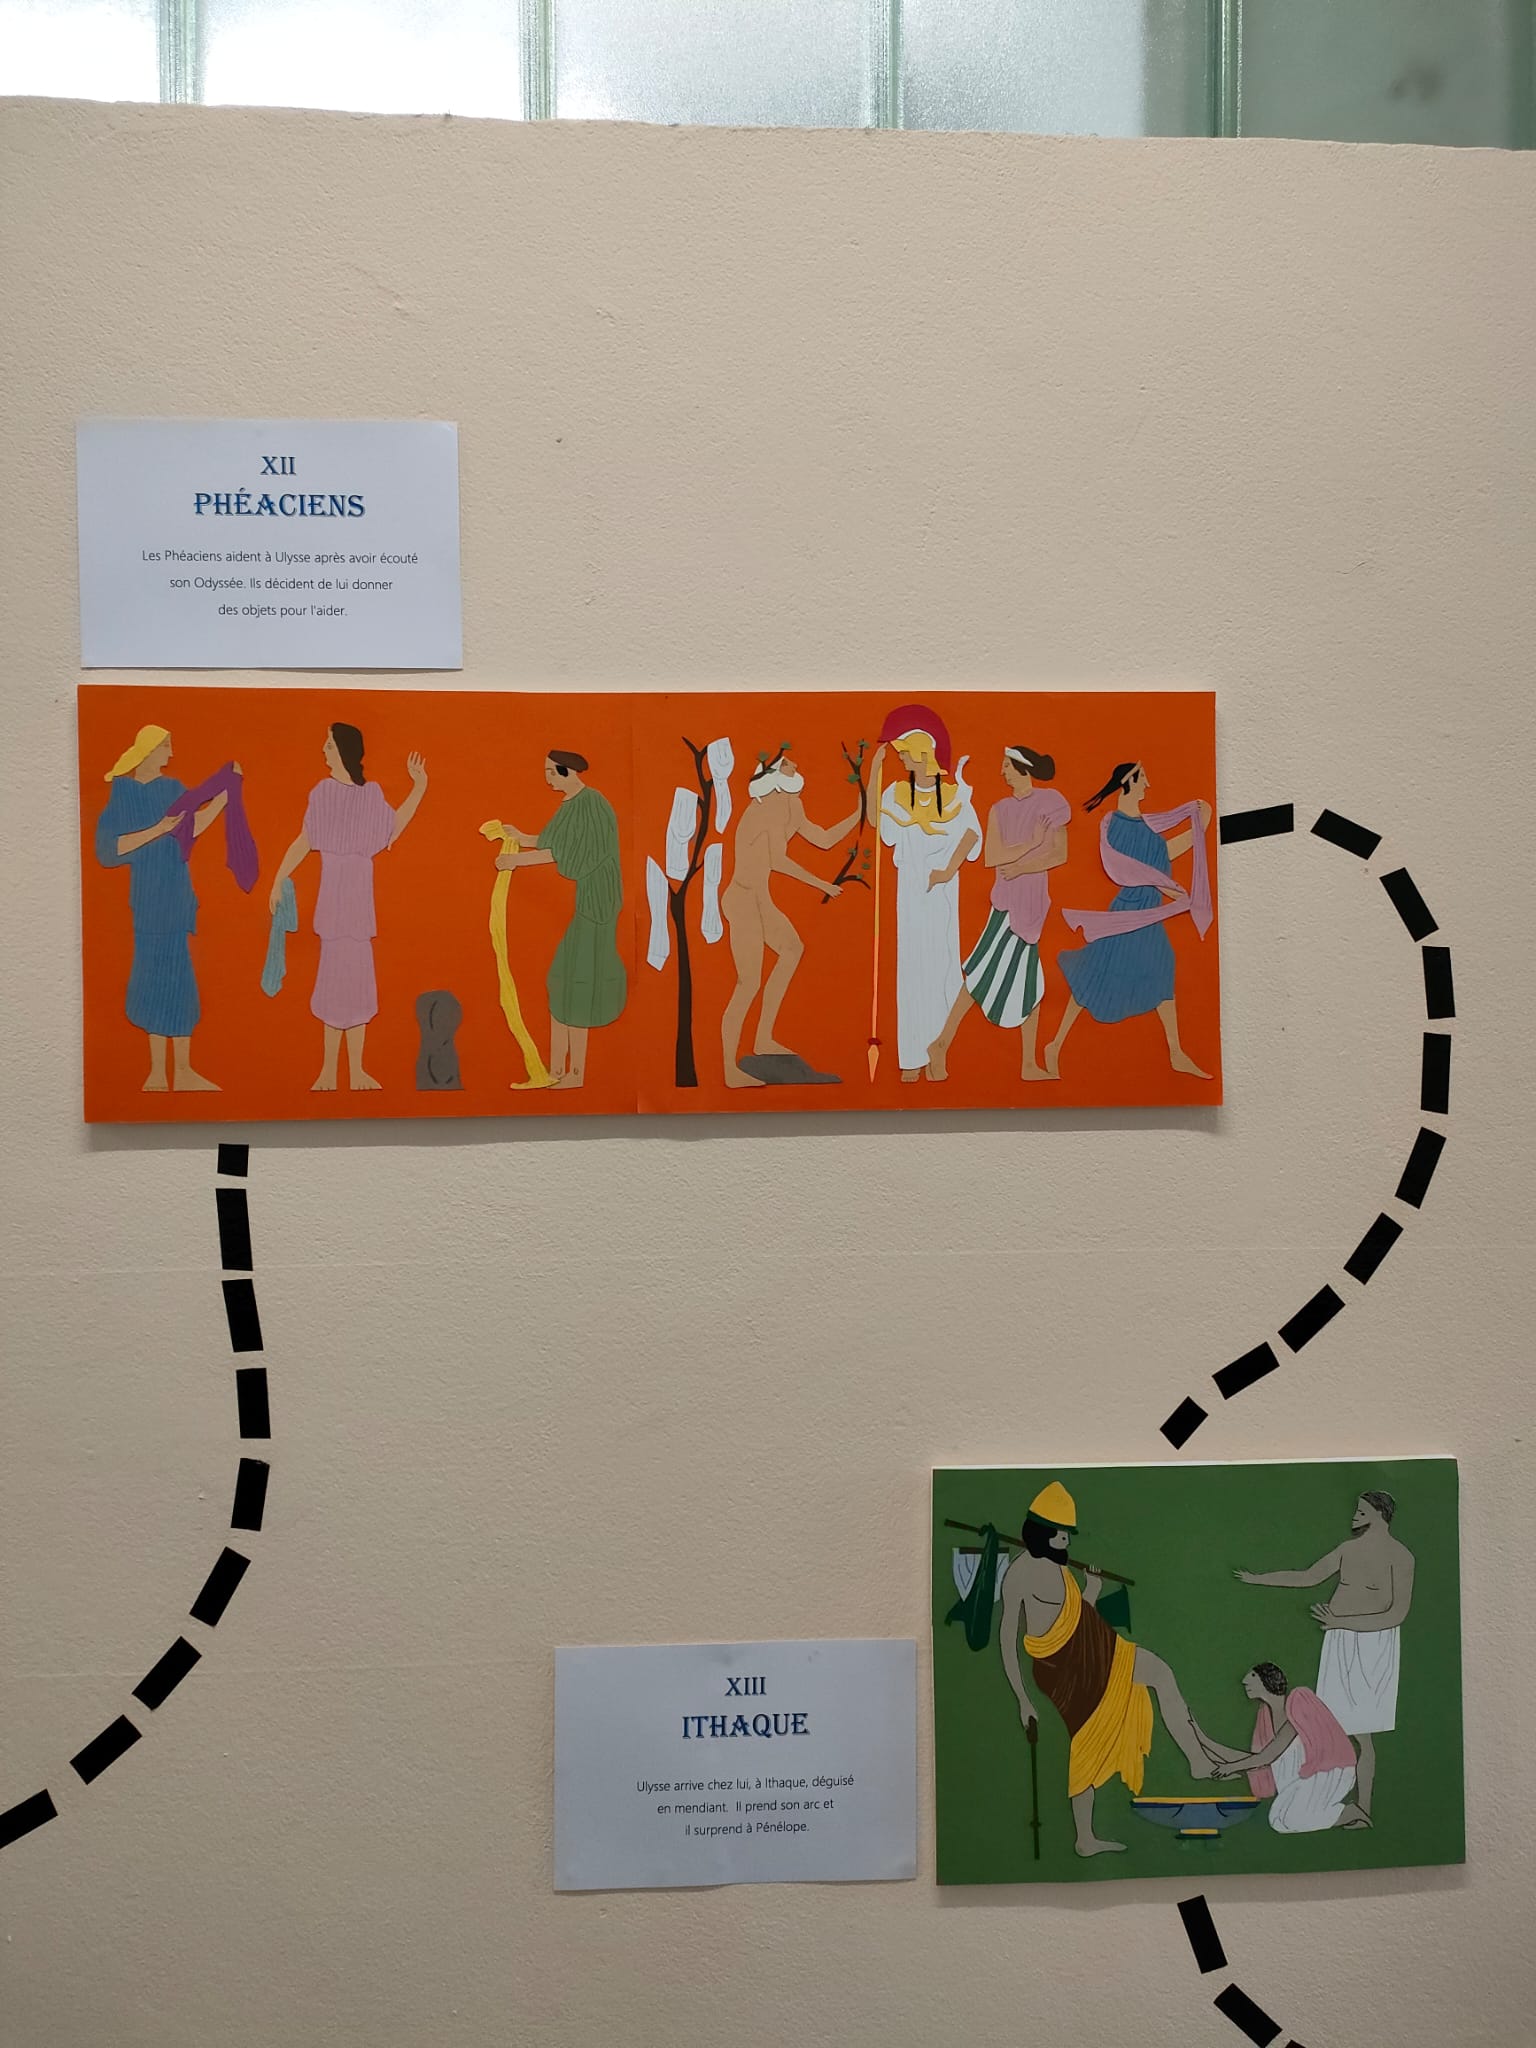 Exposición plástica resultado del proyecto interdisciplinar "La Odisea", realizado por los alumnos de 1º ESO del Centro Educativo Gençana